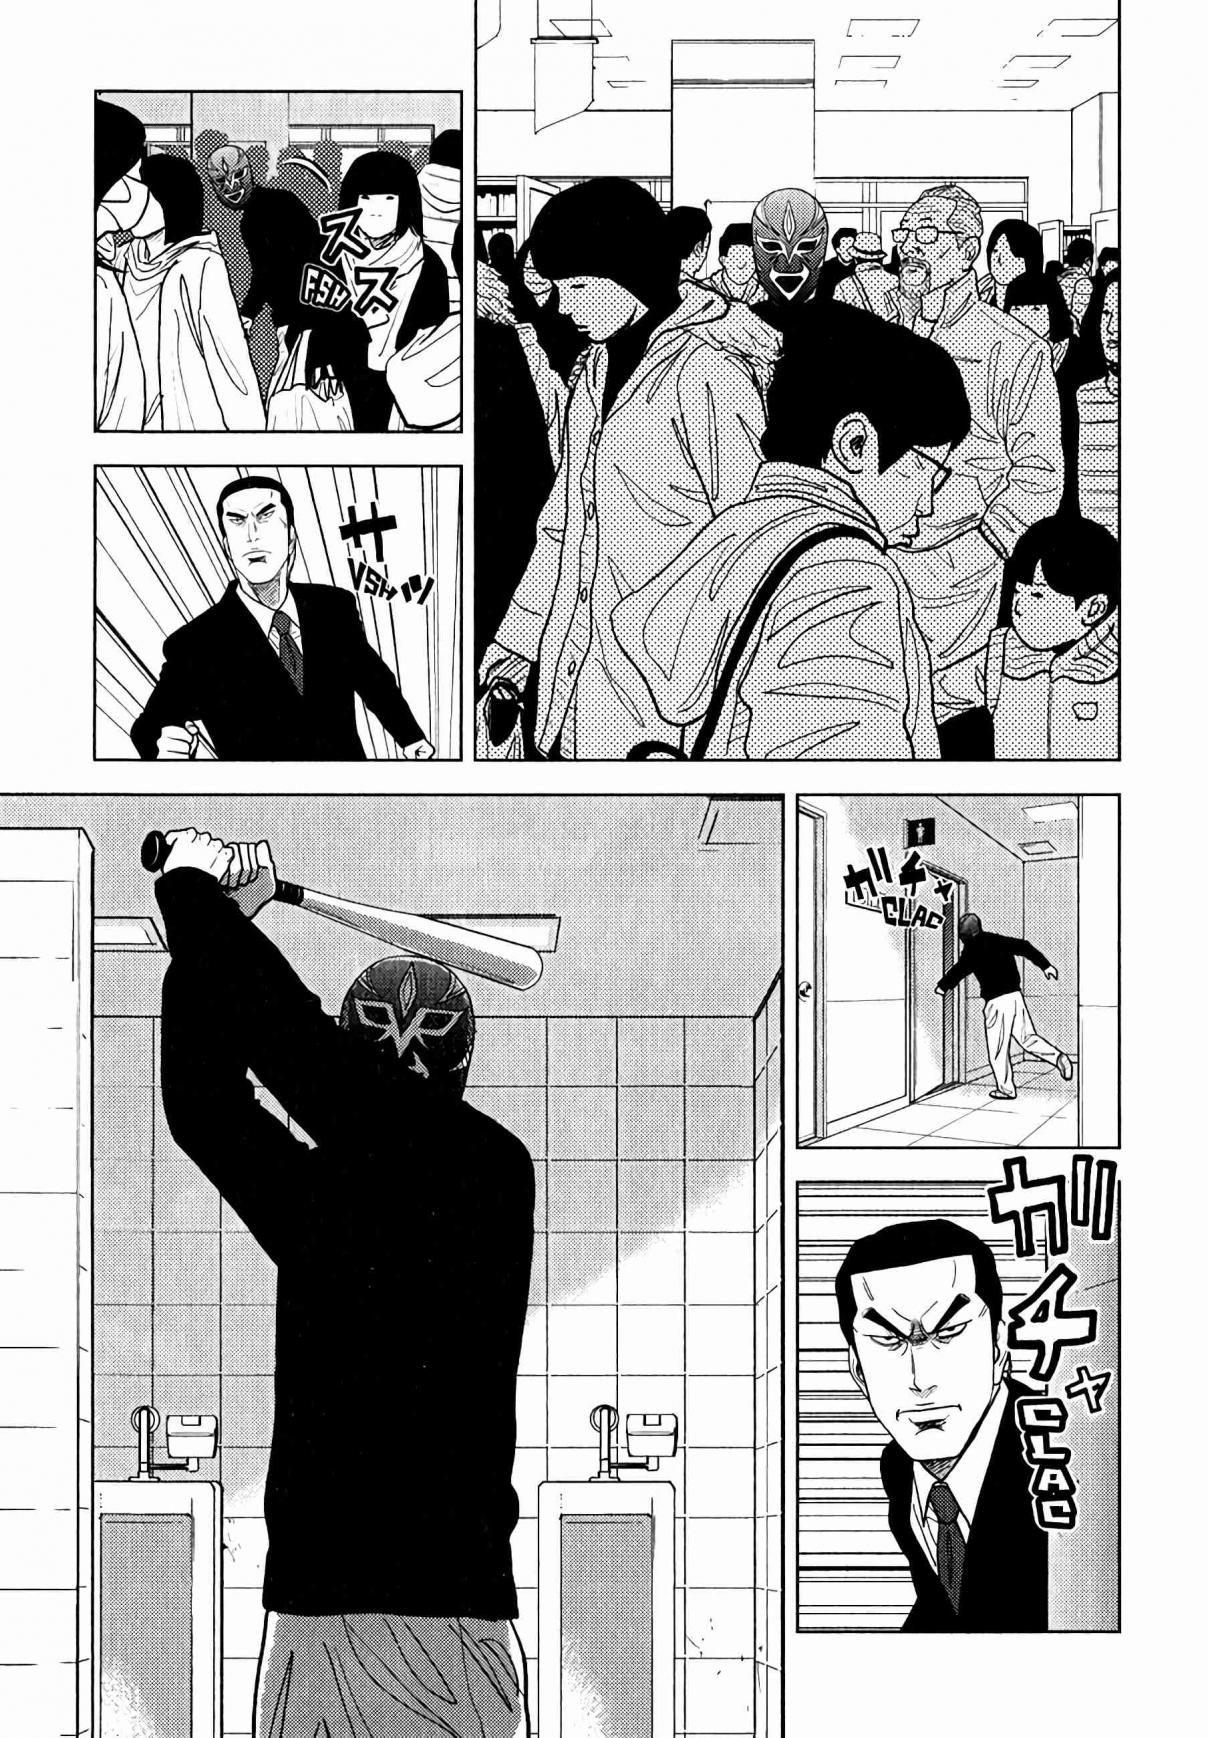 Inspector Kurokochi Vol. 1 Ch. 7 The Green Elder